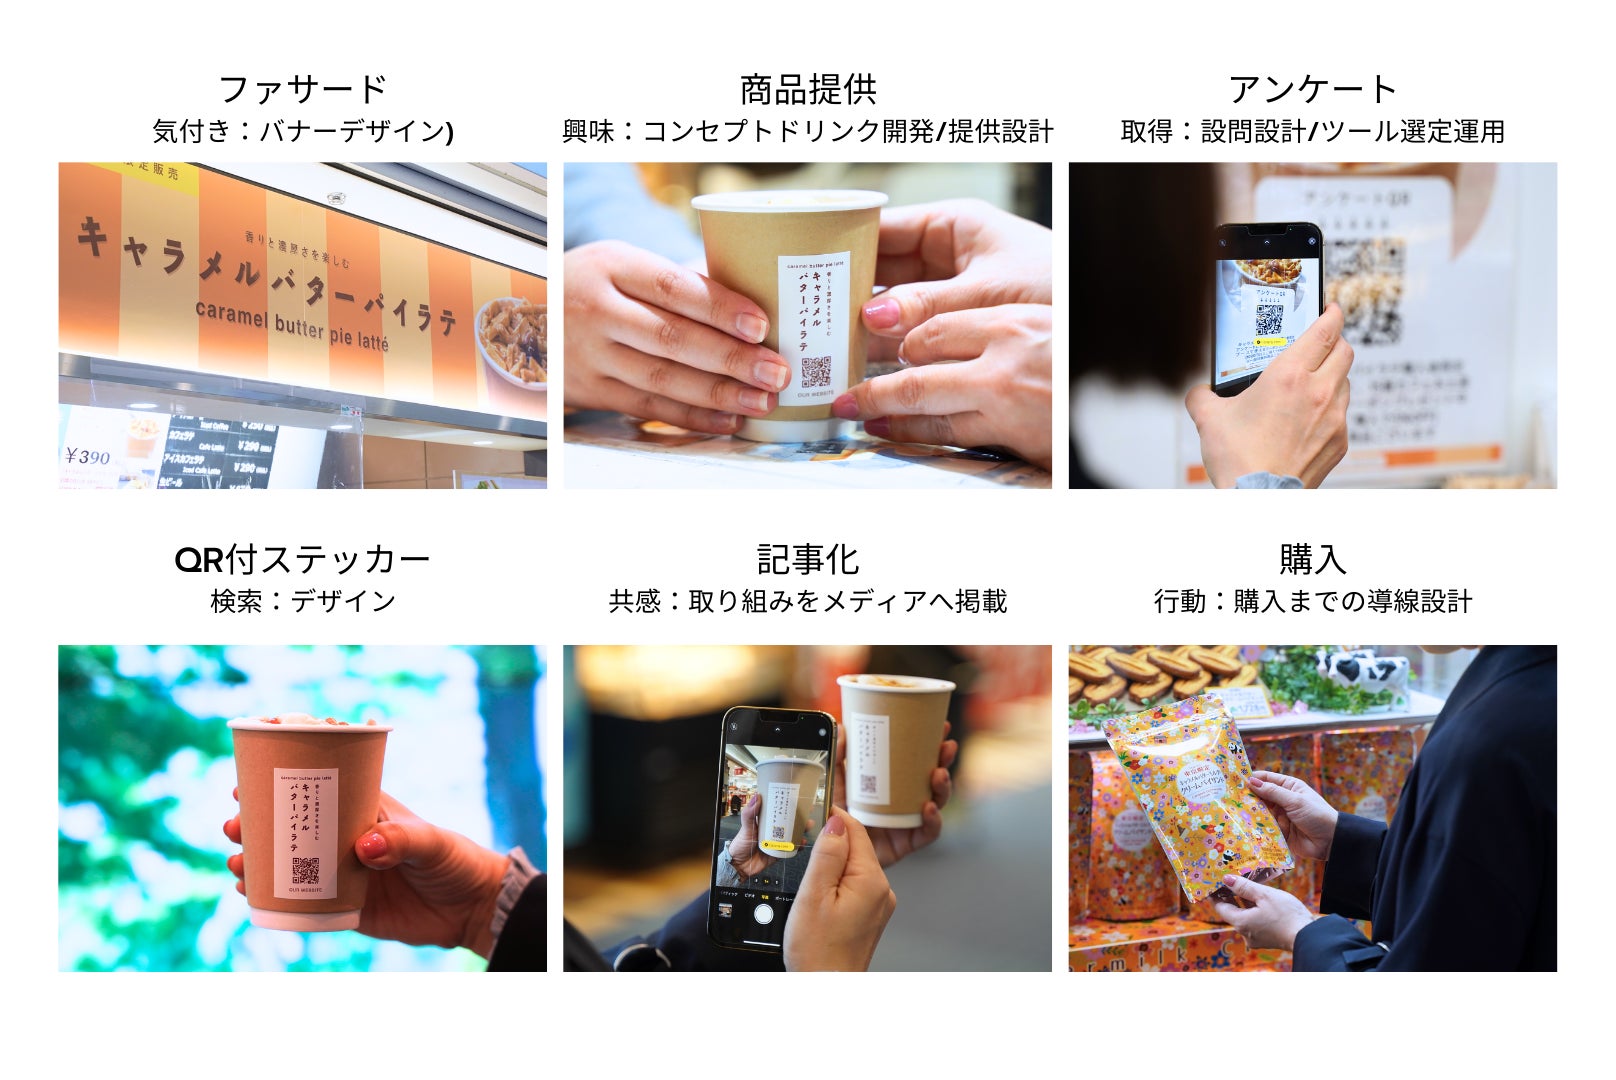 羽田空港内でお土産の体験価値を高めるポップアップを開催。『知るコトで新たなコミュニケーションを…』お土産を”選ぶと渡す”をCXするプロジェクト”Tasting Spot”をサポートのサブ画像2